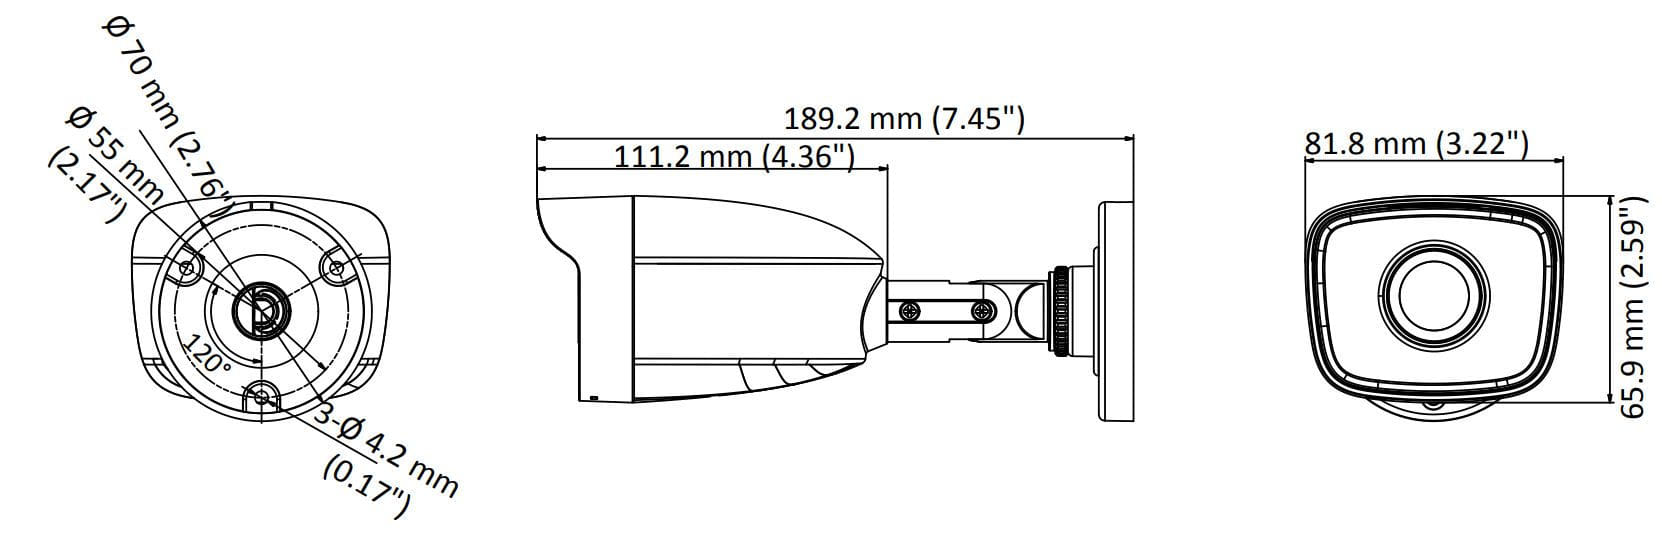 tube-4mp-hdtvi-fixe-schema